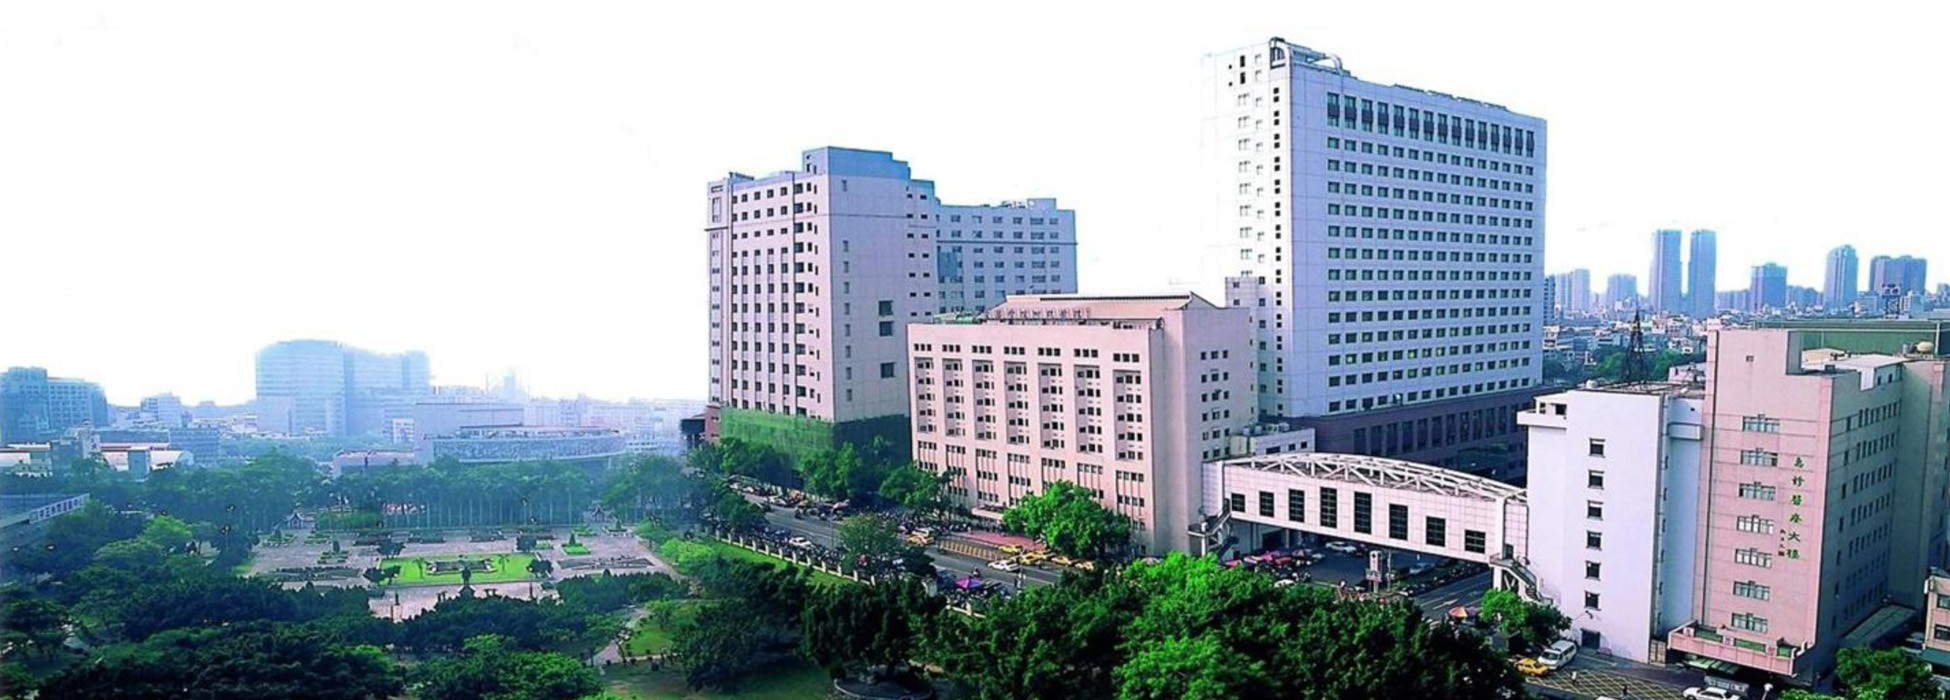 China Medical University, Taiwan | World University ...